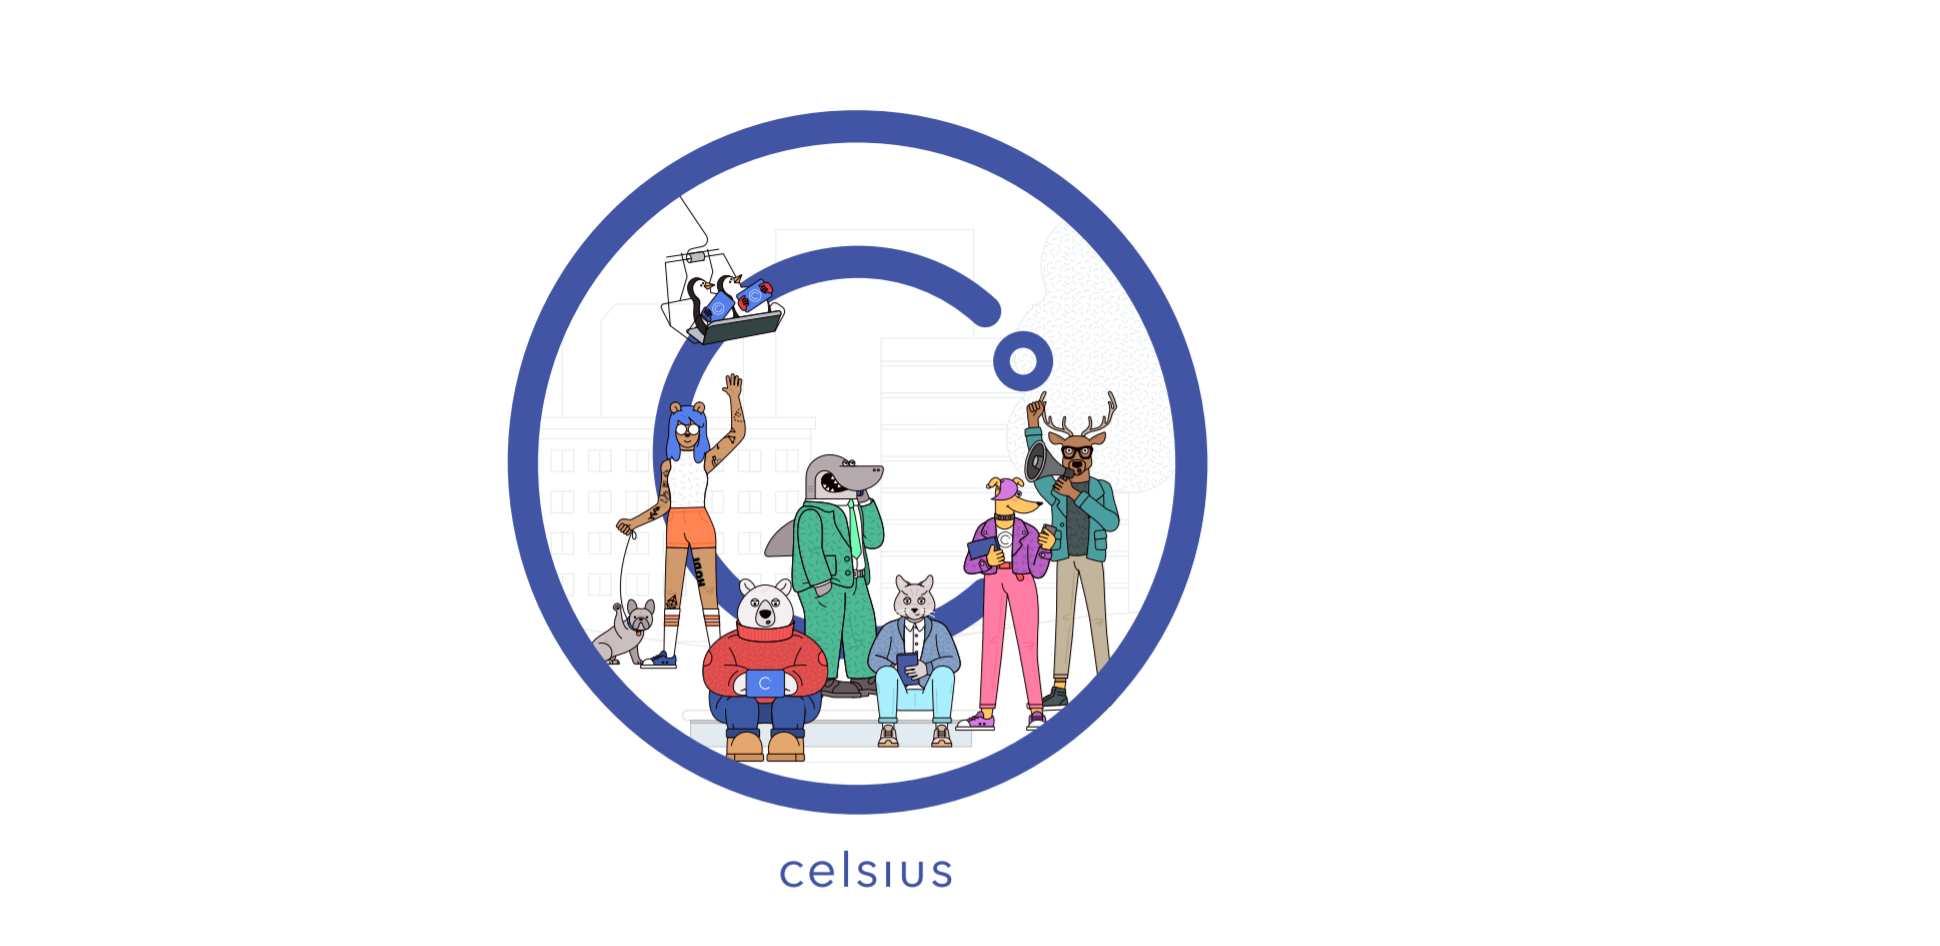 Celsius - Decentralized Lending & Borrowing Platform